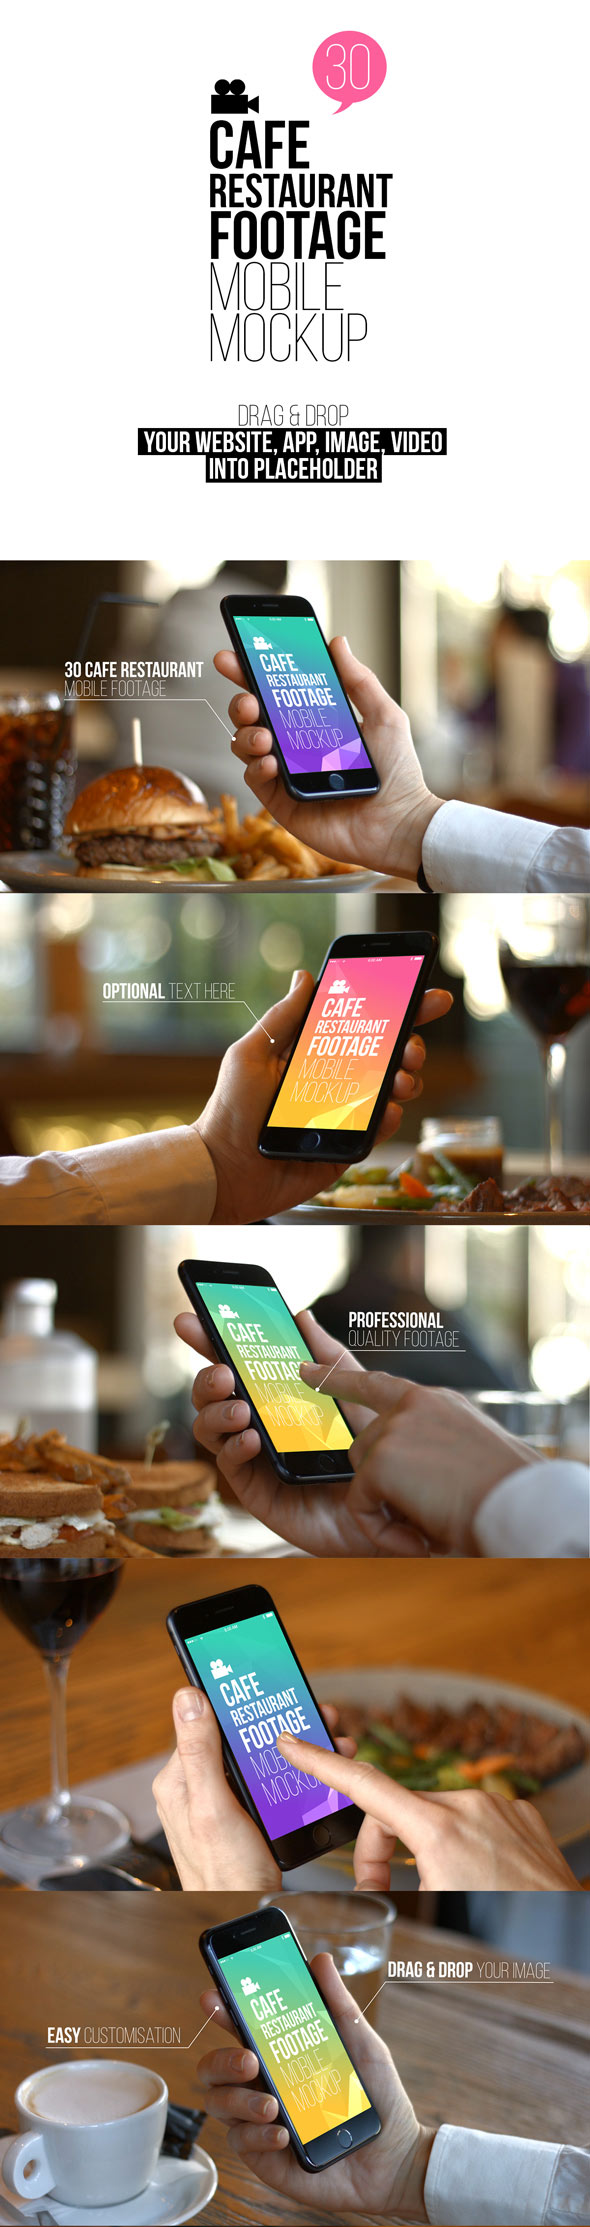 پروژه افترافکت مجموعه فوتیج موکاپ موبایل در کافه رستوران